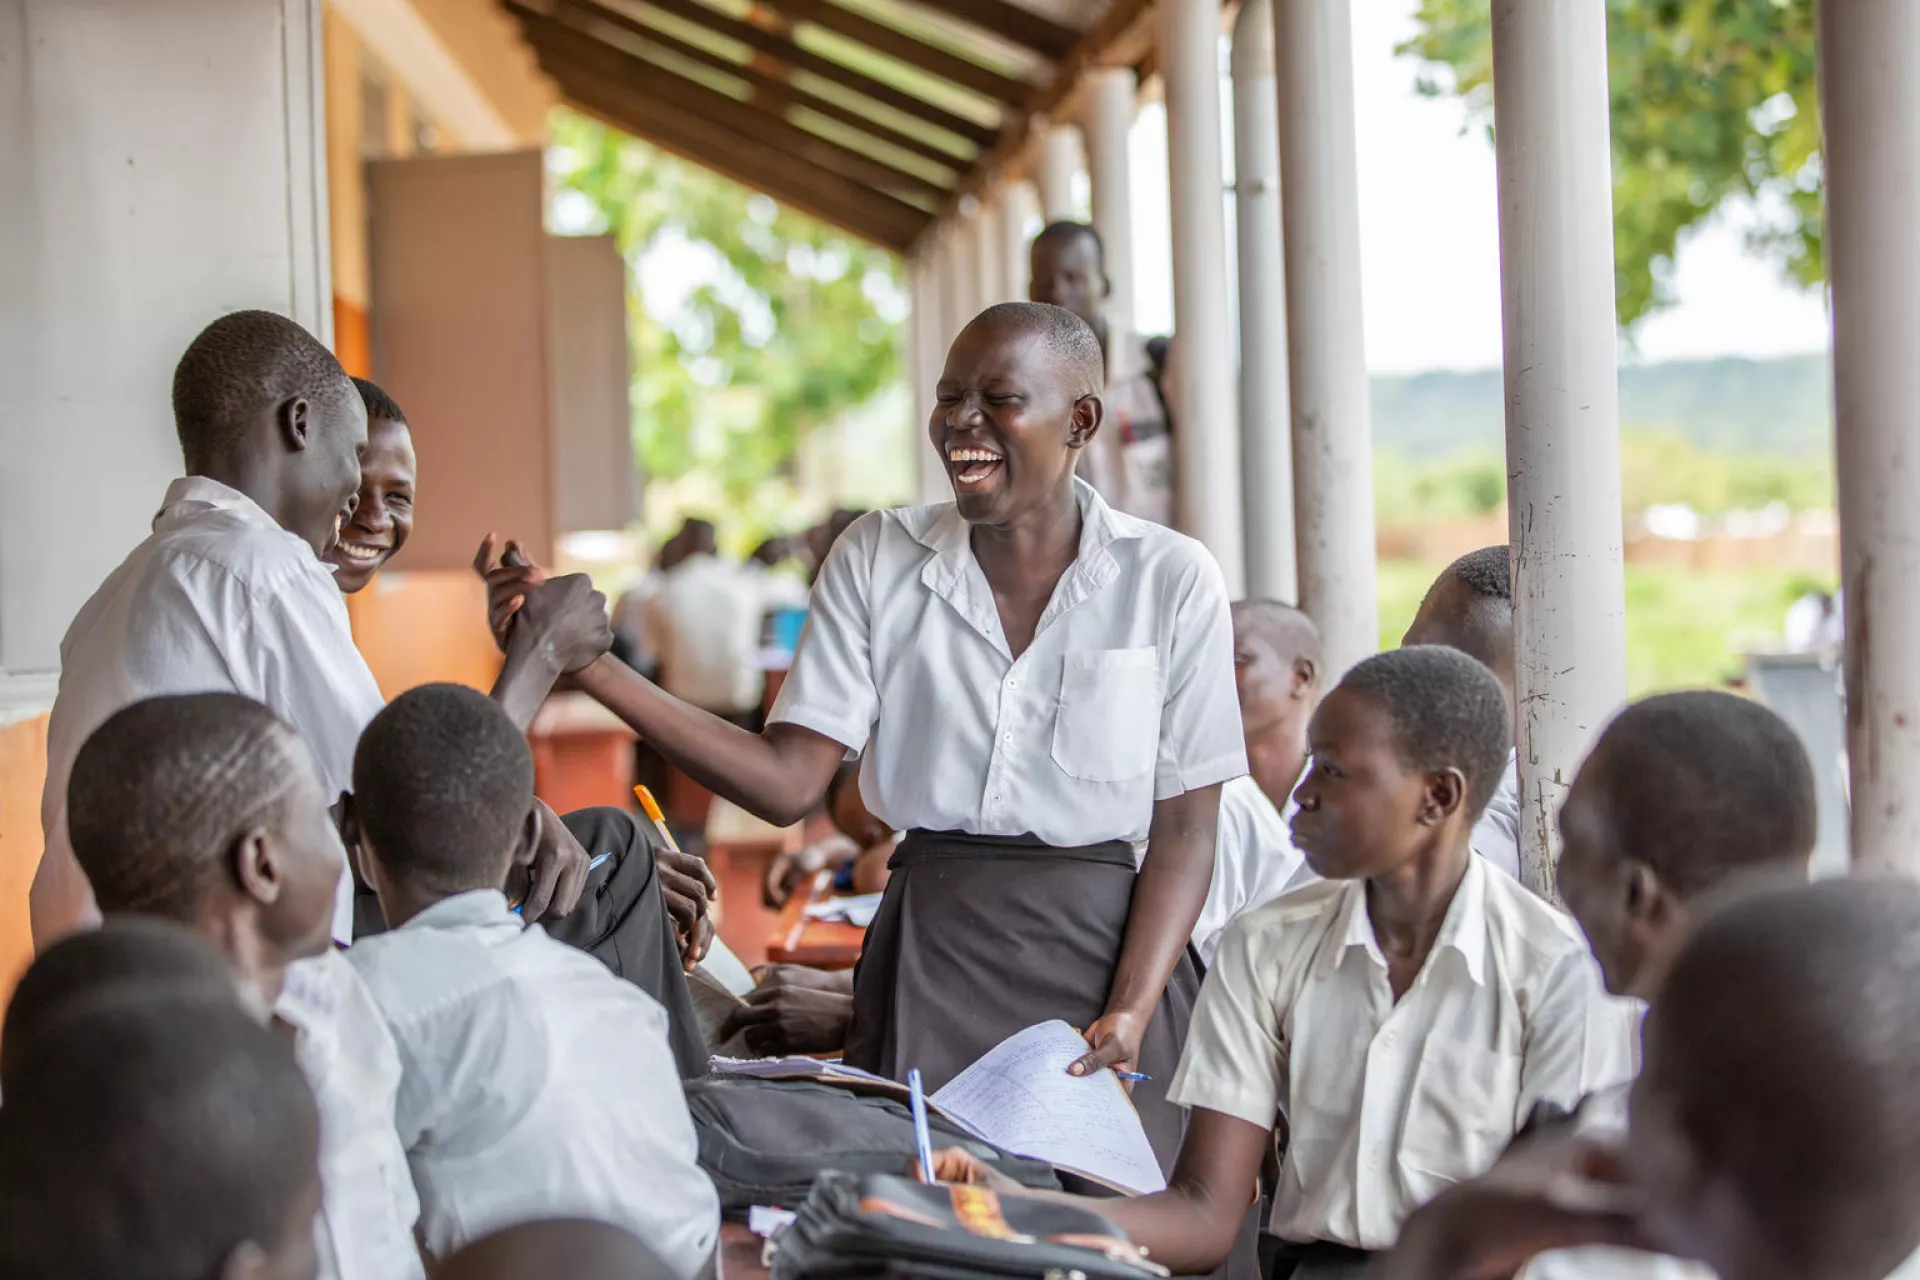 Une adolescente de 17 ans rit avec ses amis dans la cour de leur école, en Ouganda (2019).